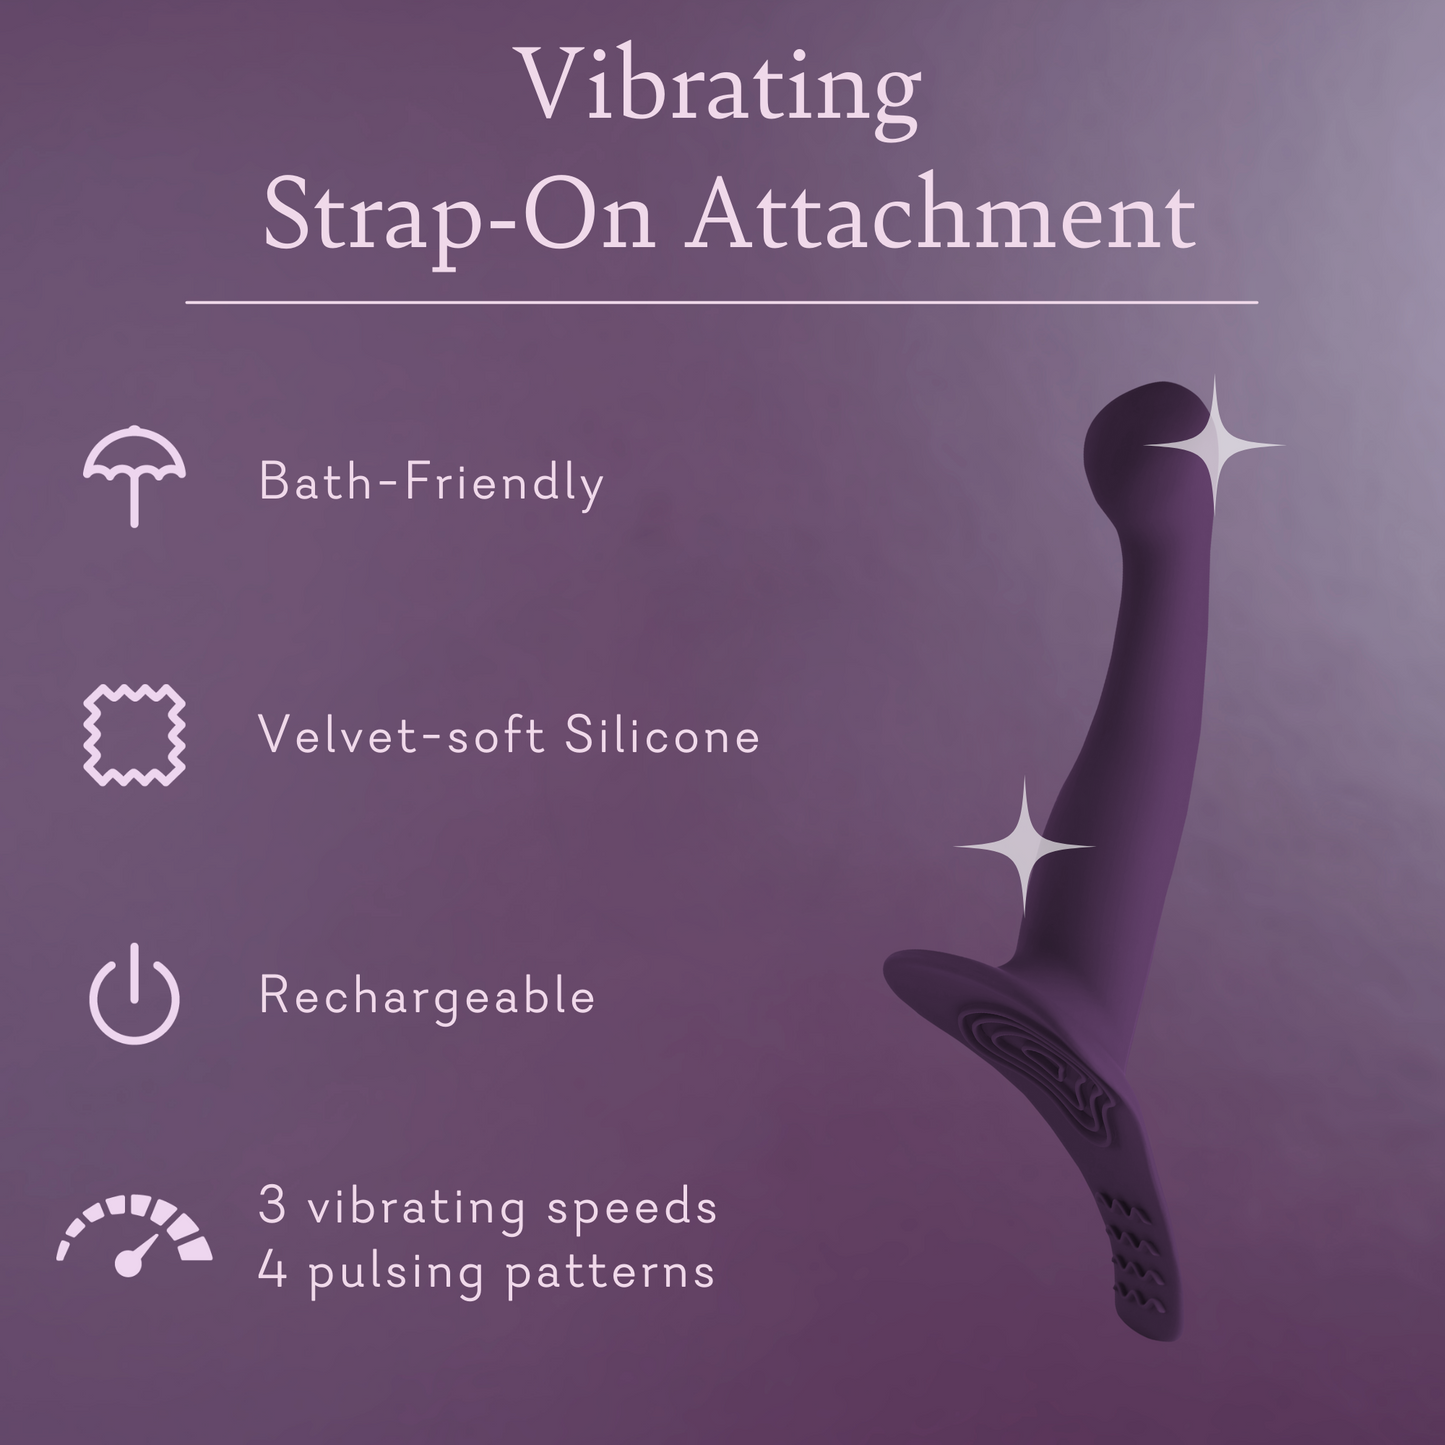 Vibrating Strap-On Attachment